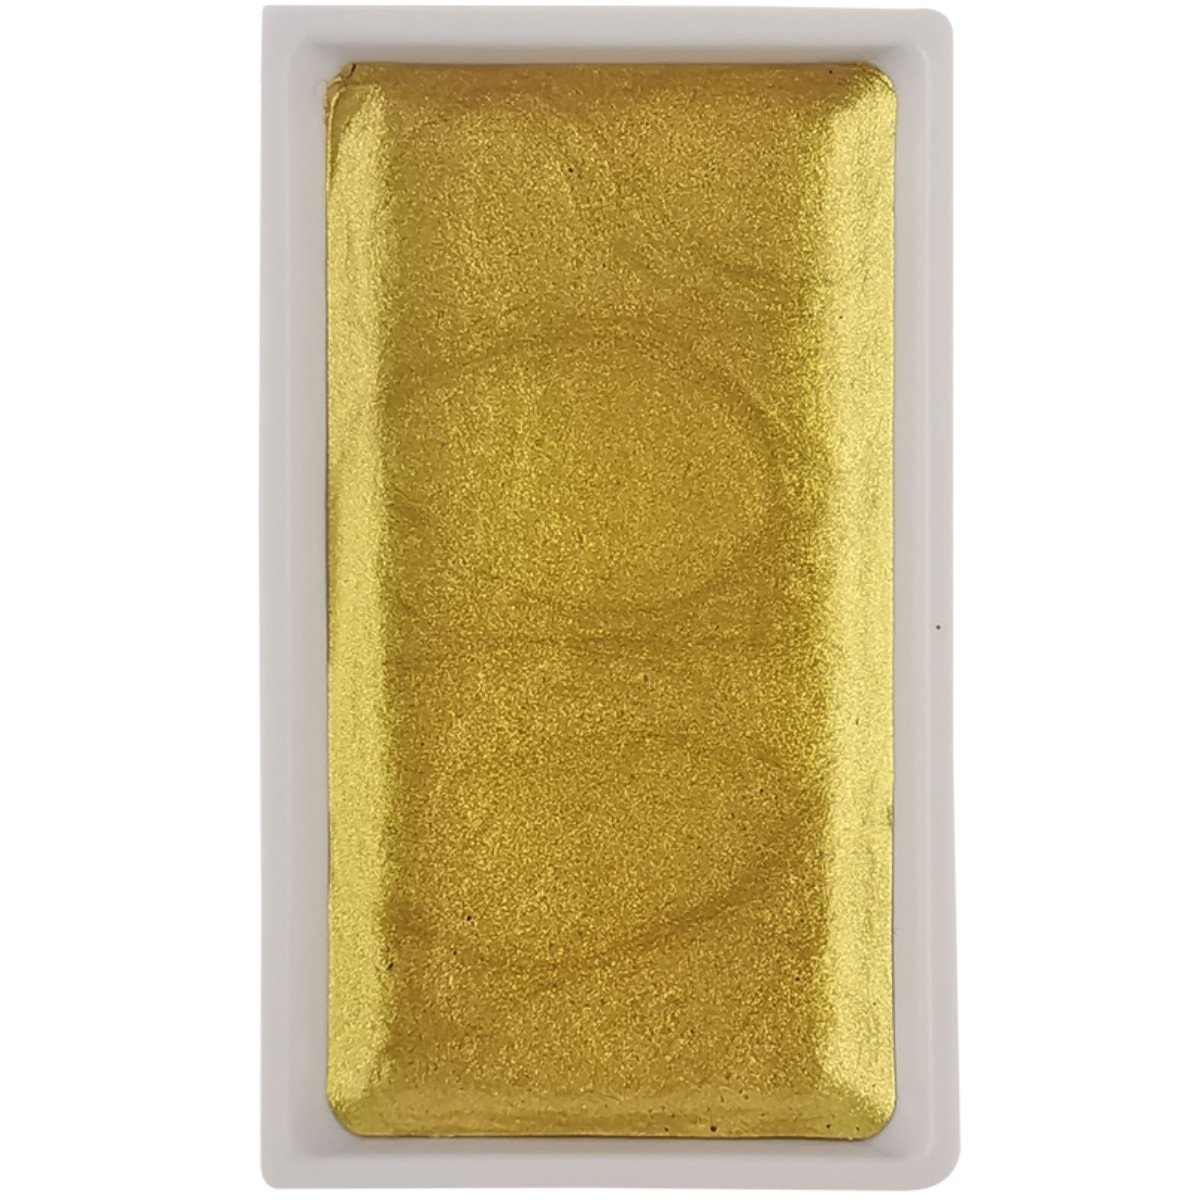 Zig Gansai Tambi Suluboya Tablet No 903 Yellow Gold